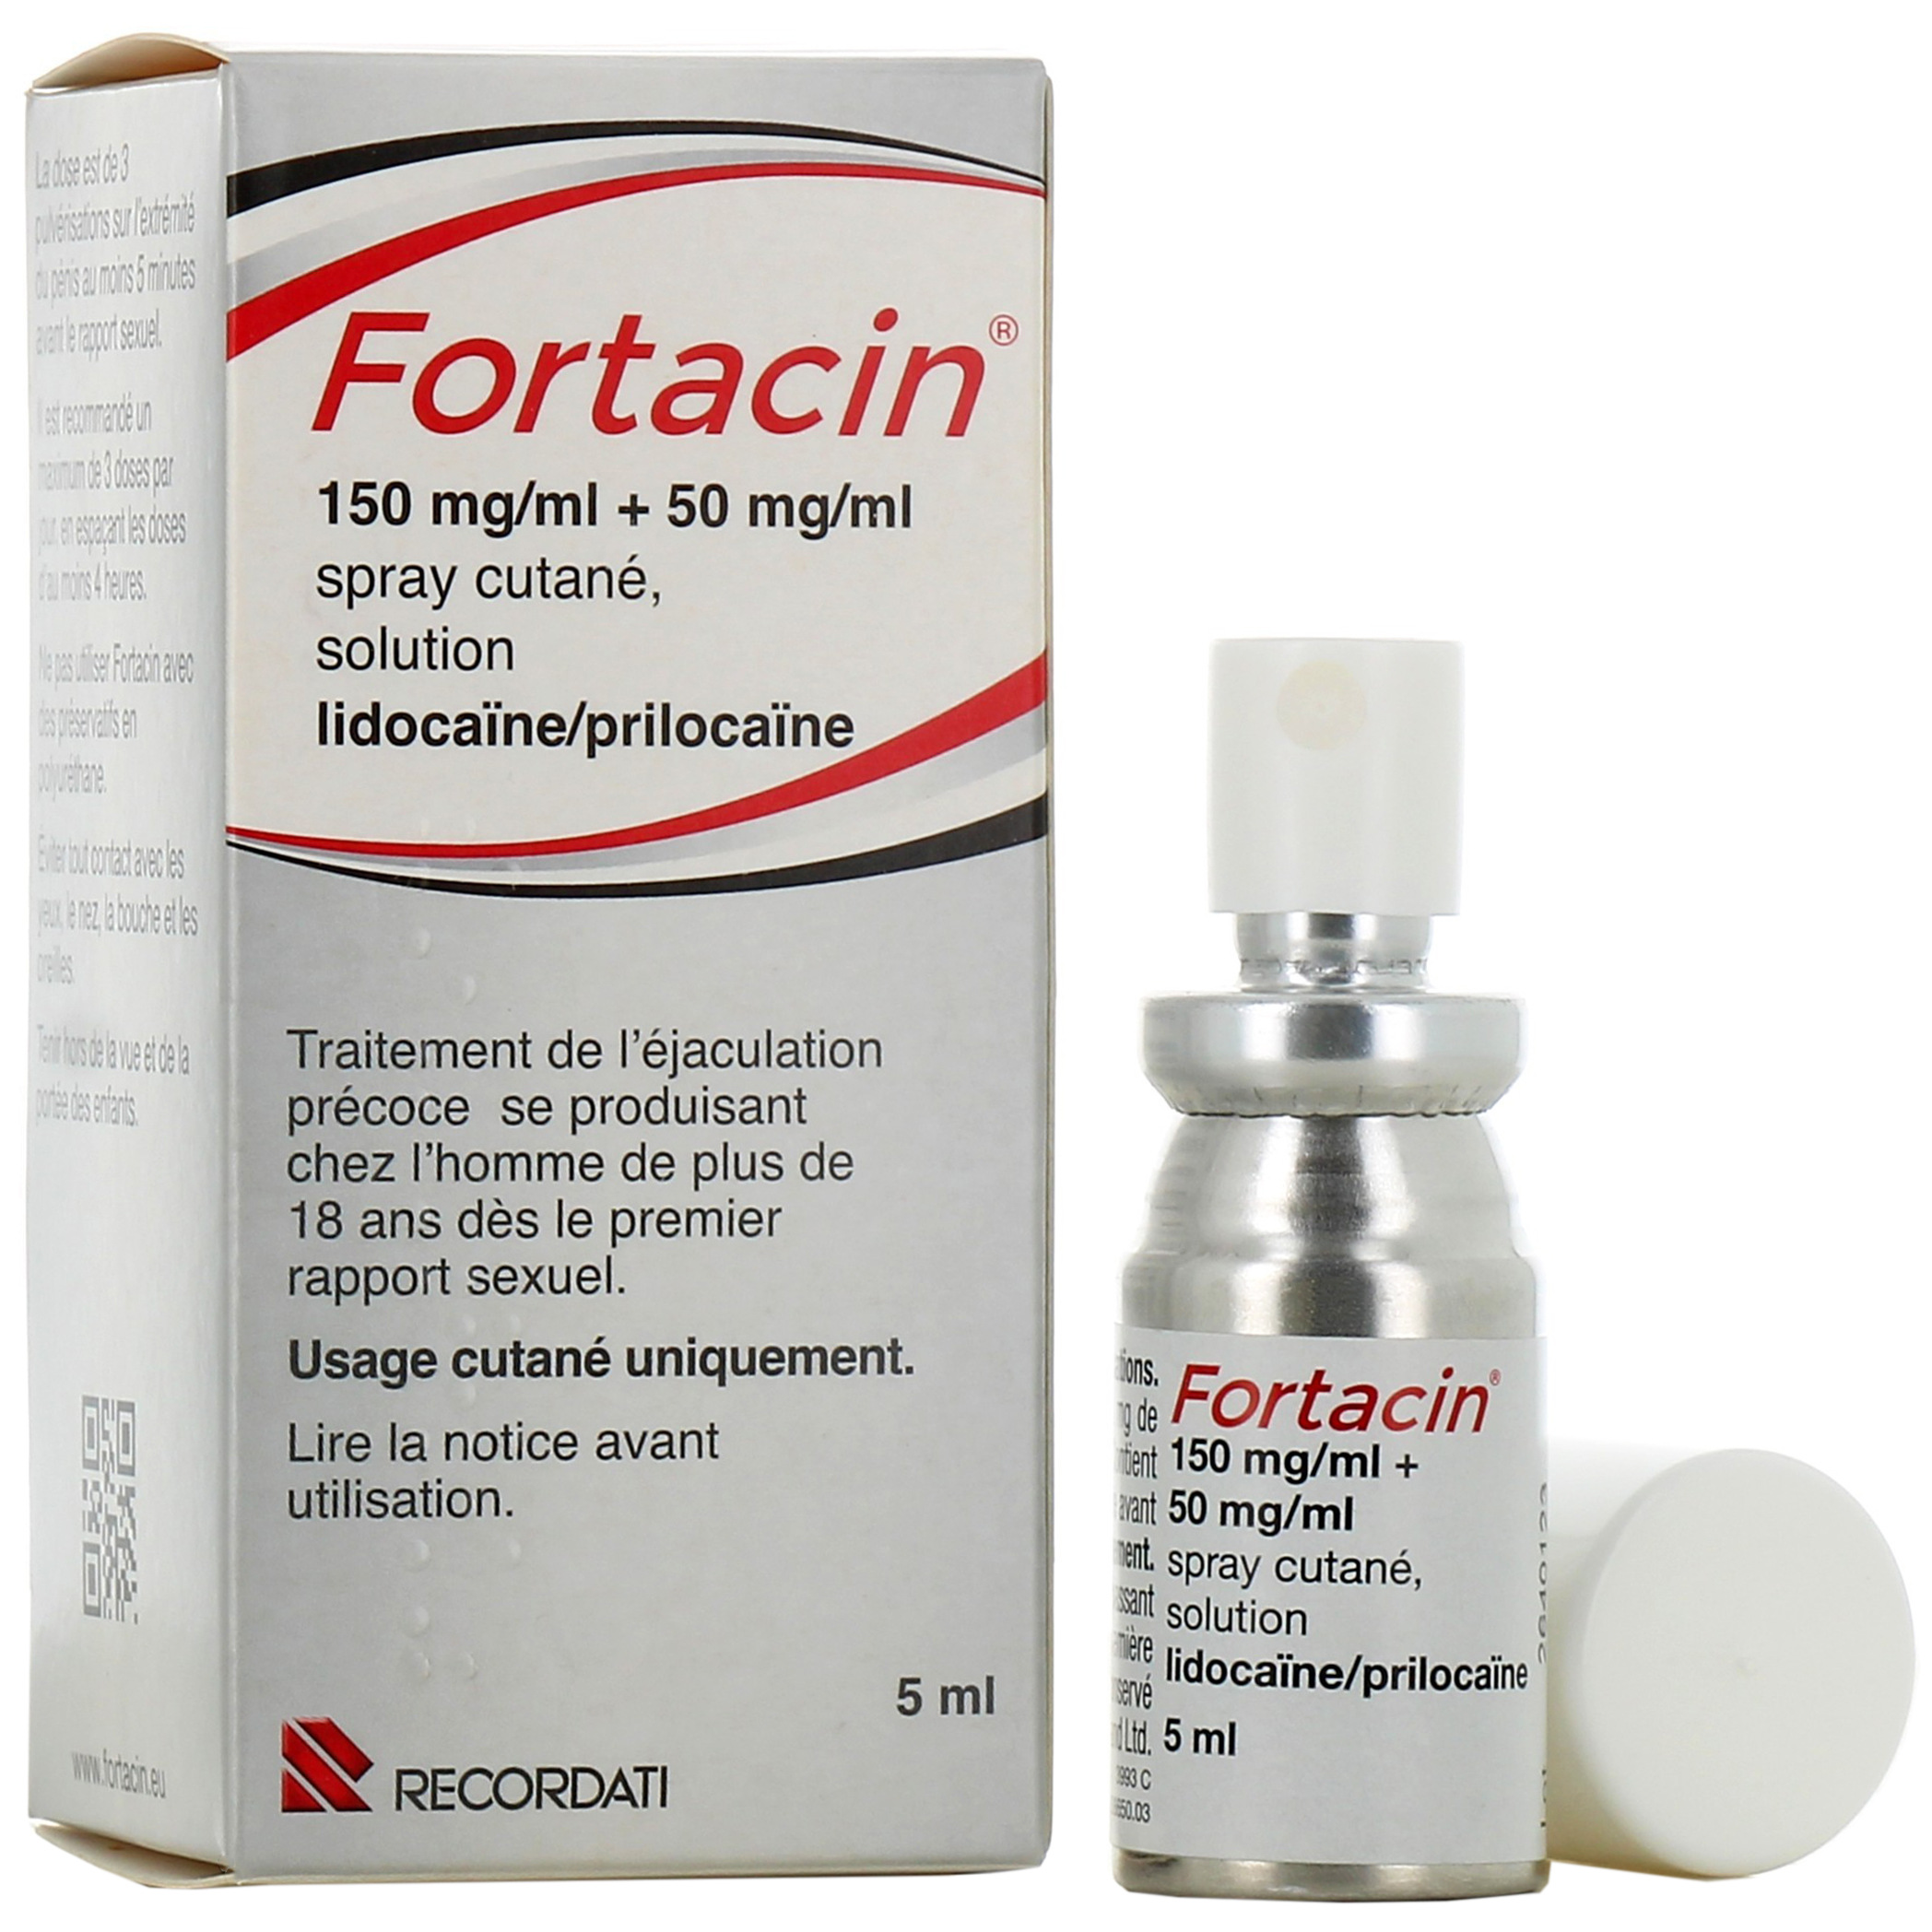 Fortacin : médicament contre l'éjaculation précoce